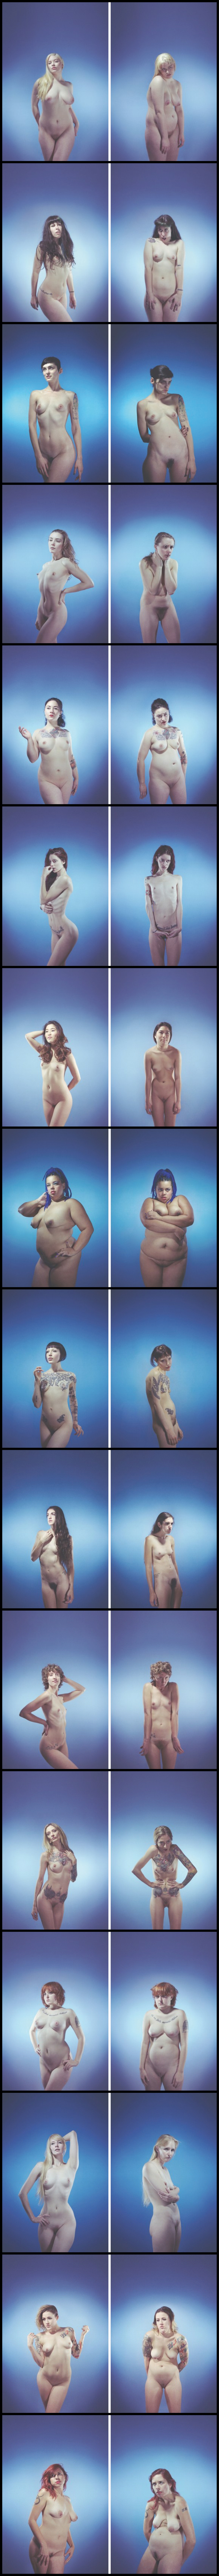 Dans un travail intitulé 'Illusions of the body', la photographe Gracie Hagen a réalisé une série de photographie pour montrer le pouvoir de la posture du corps des femmes sur leur apparence et leur beauté, ainsi que le désir qui en découle.